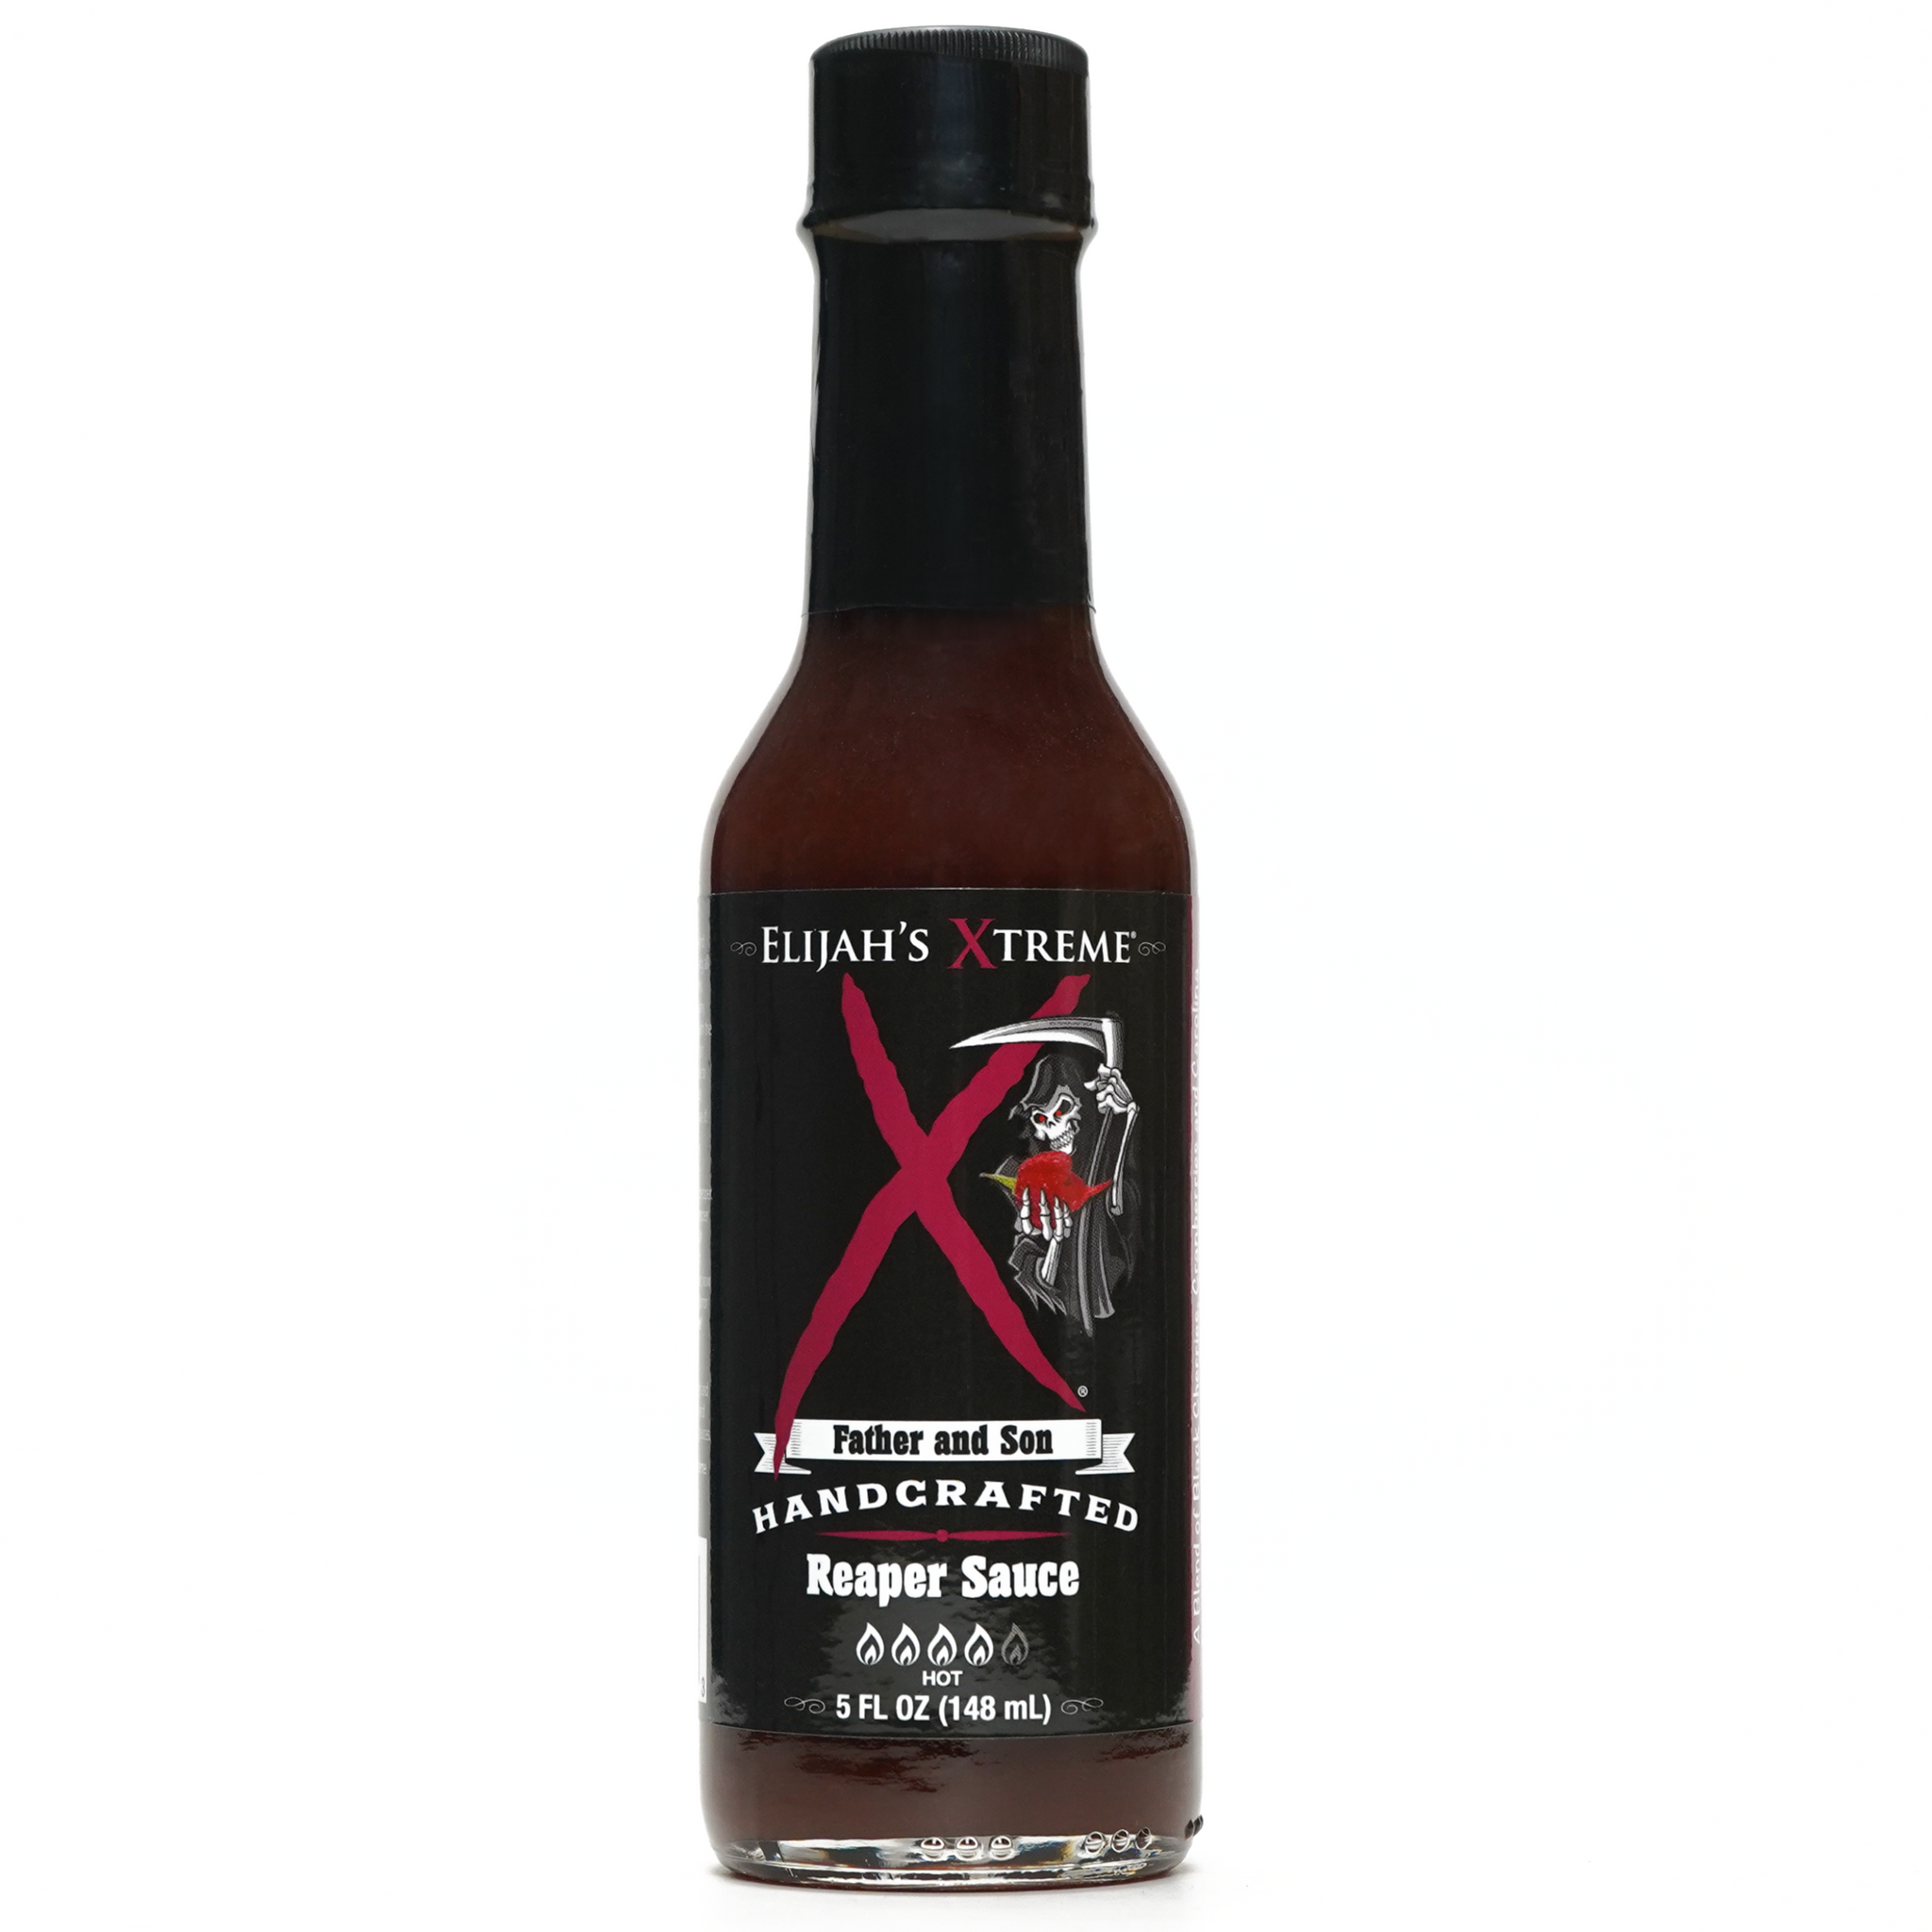 Reaper Hot Sauce